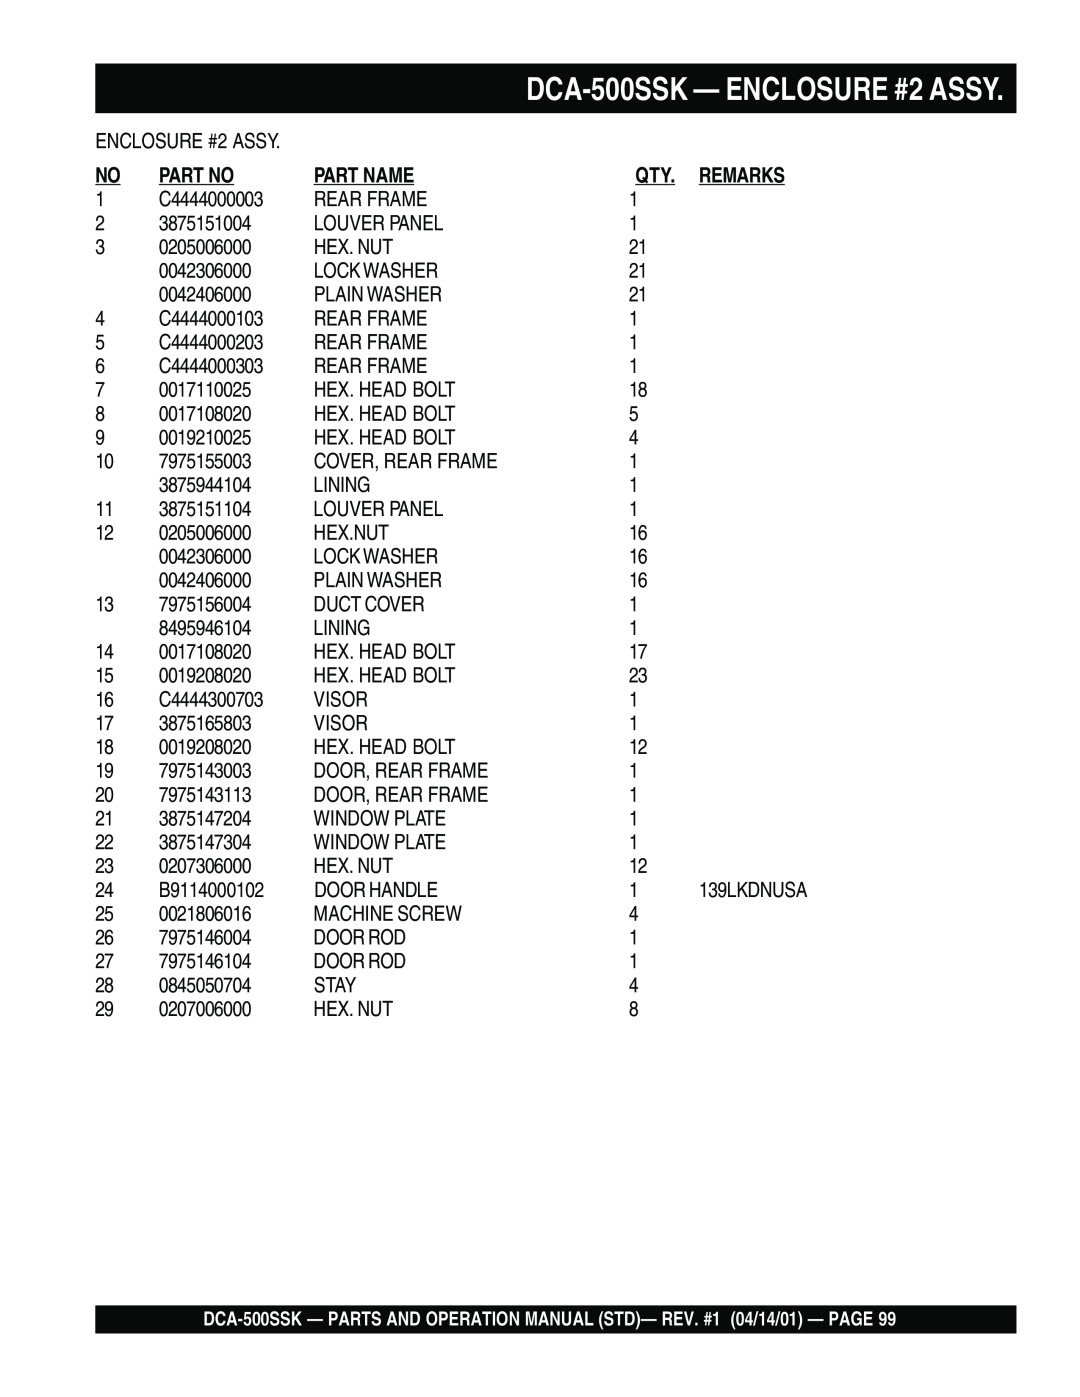 Multiquip operation manual DCA-500SSK - ENCLOSURE #2 ASSY, Part Name, Remarks, 139LKDNUSA 